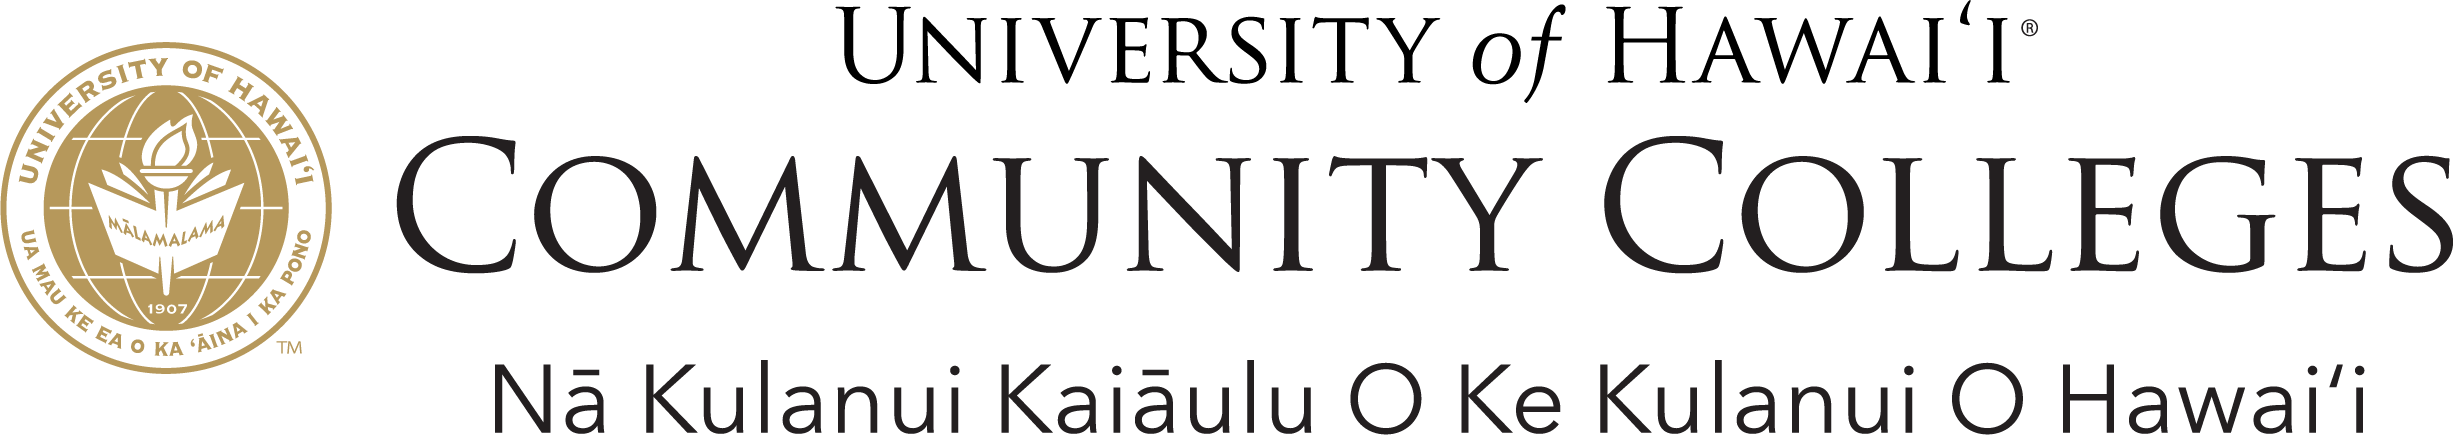 UHCC-Hawaiian-logo.png